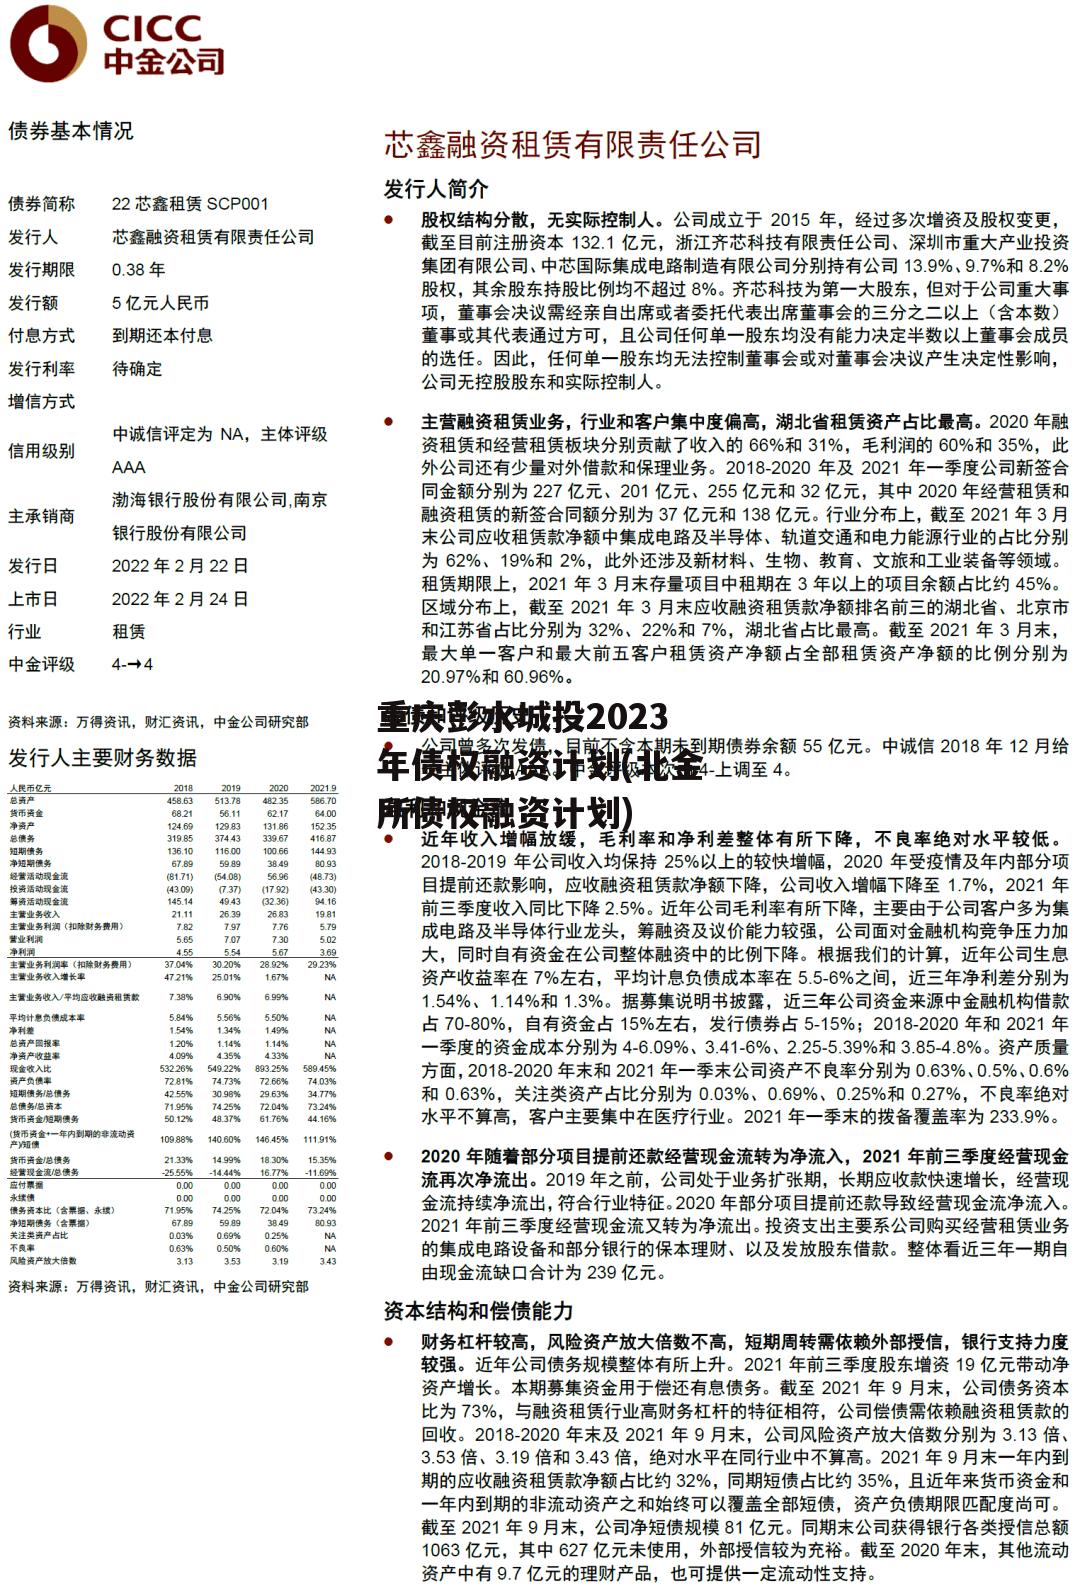 重庆彭水城投2023年债权融资计划(北金所债权融资计划)